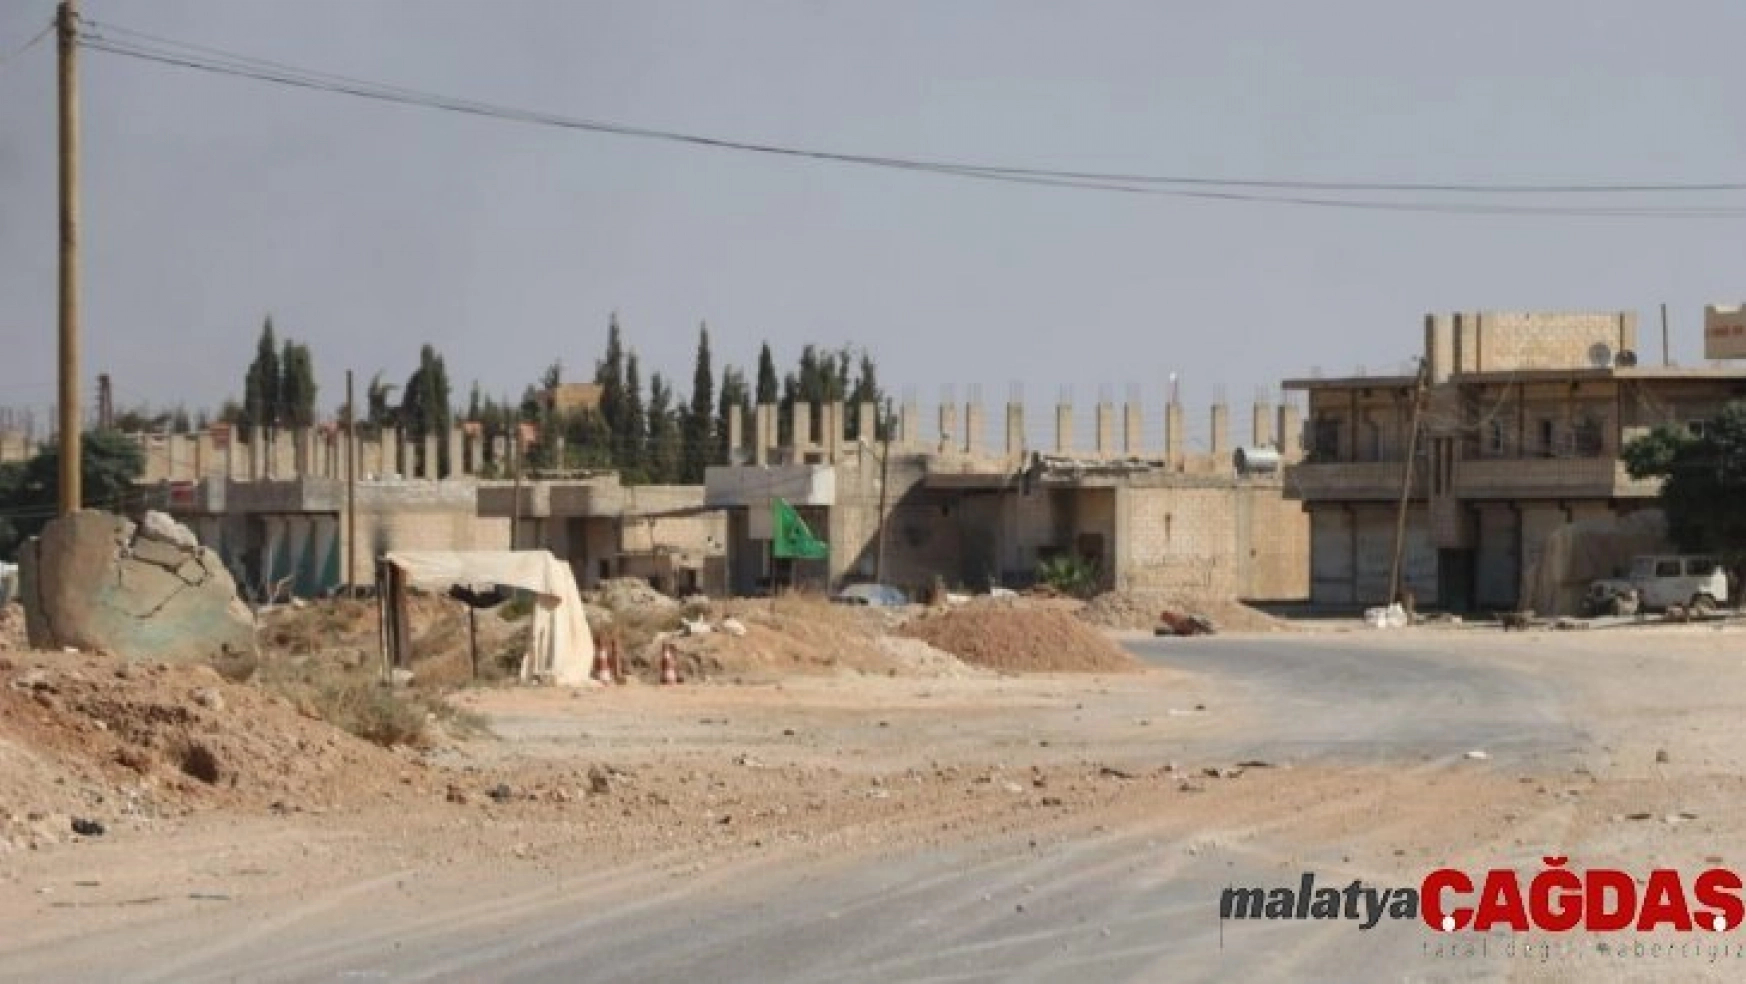 Suriye Milli Ordusu Resulayn şehir merkezinde kontrolü ele geçirdi